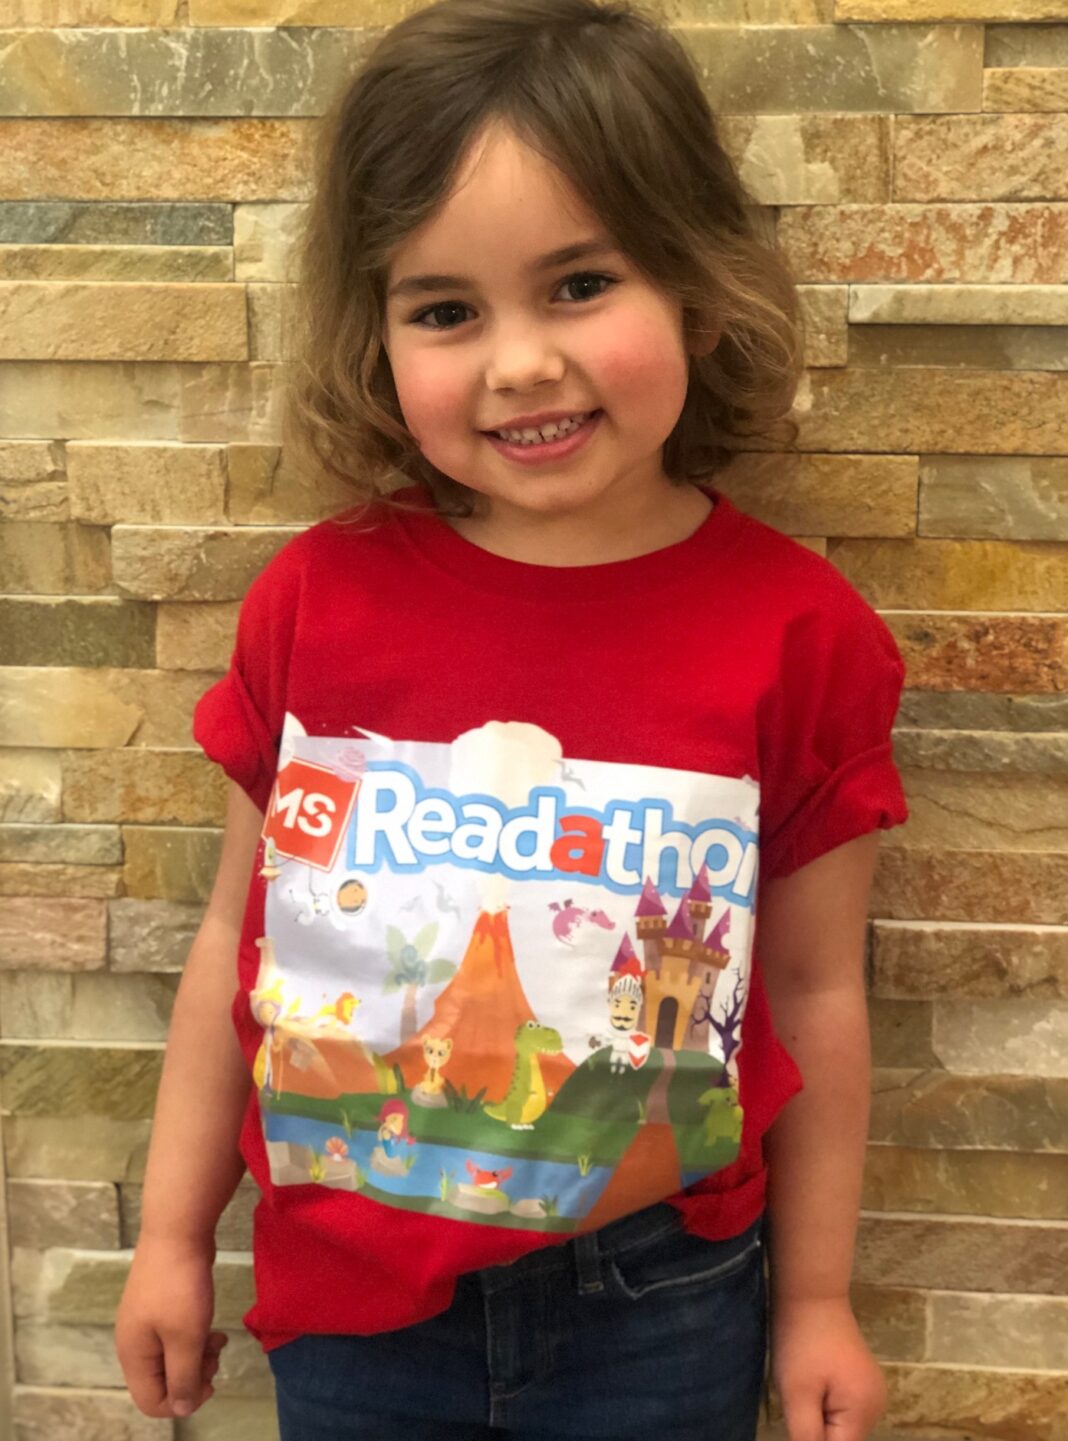 Smiling 4-year-old girl wearing red MS Readathon t-shirt